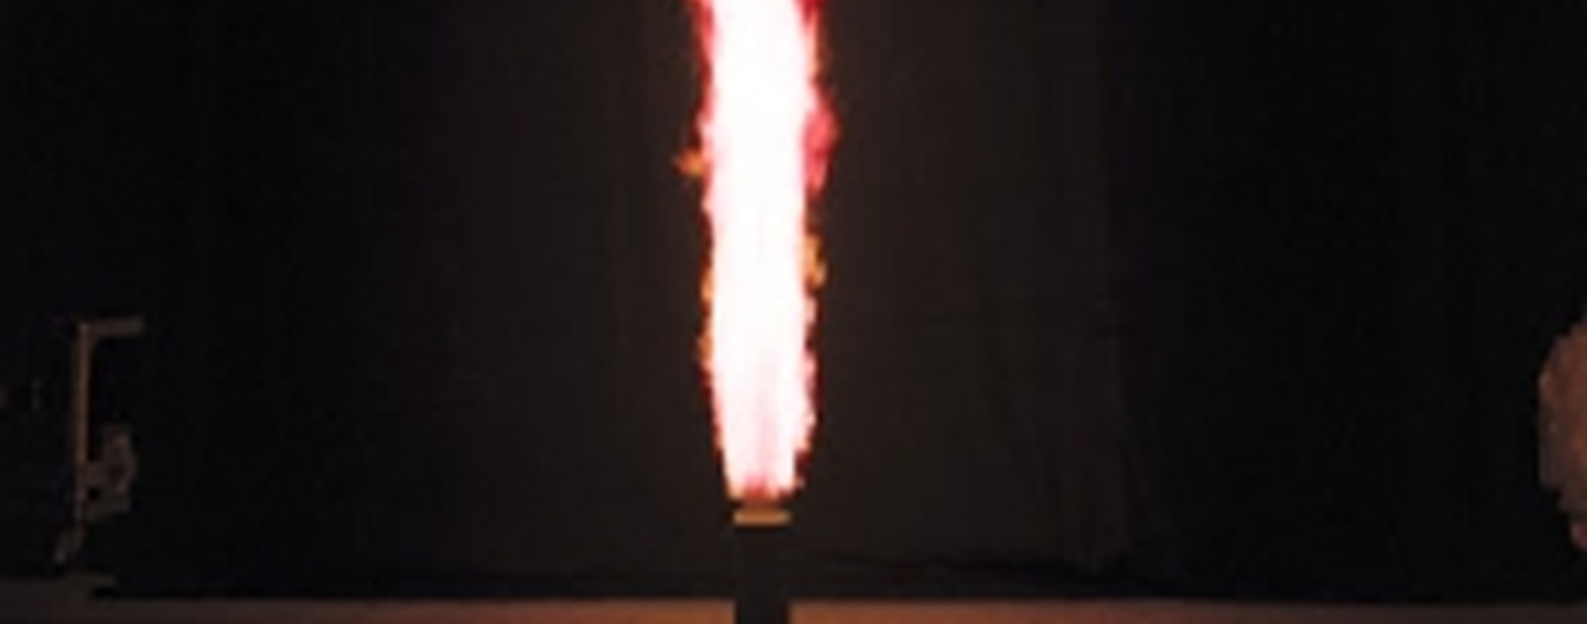 Krudtblandingen er i løs form og brænder gennem cylinderen med stigende hastighed og under stigende tryk.